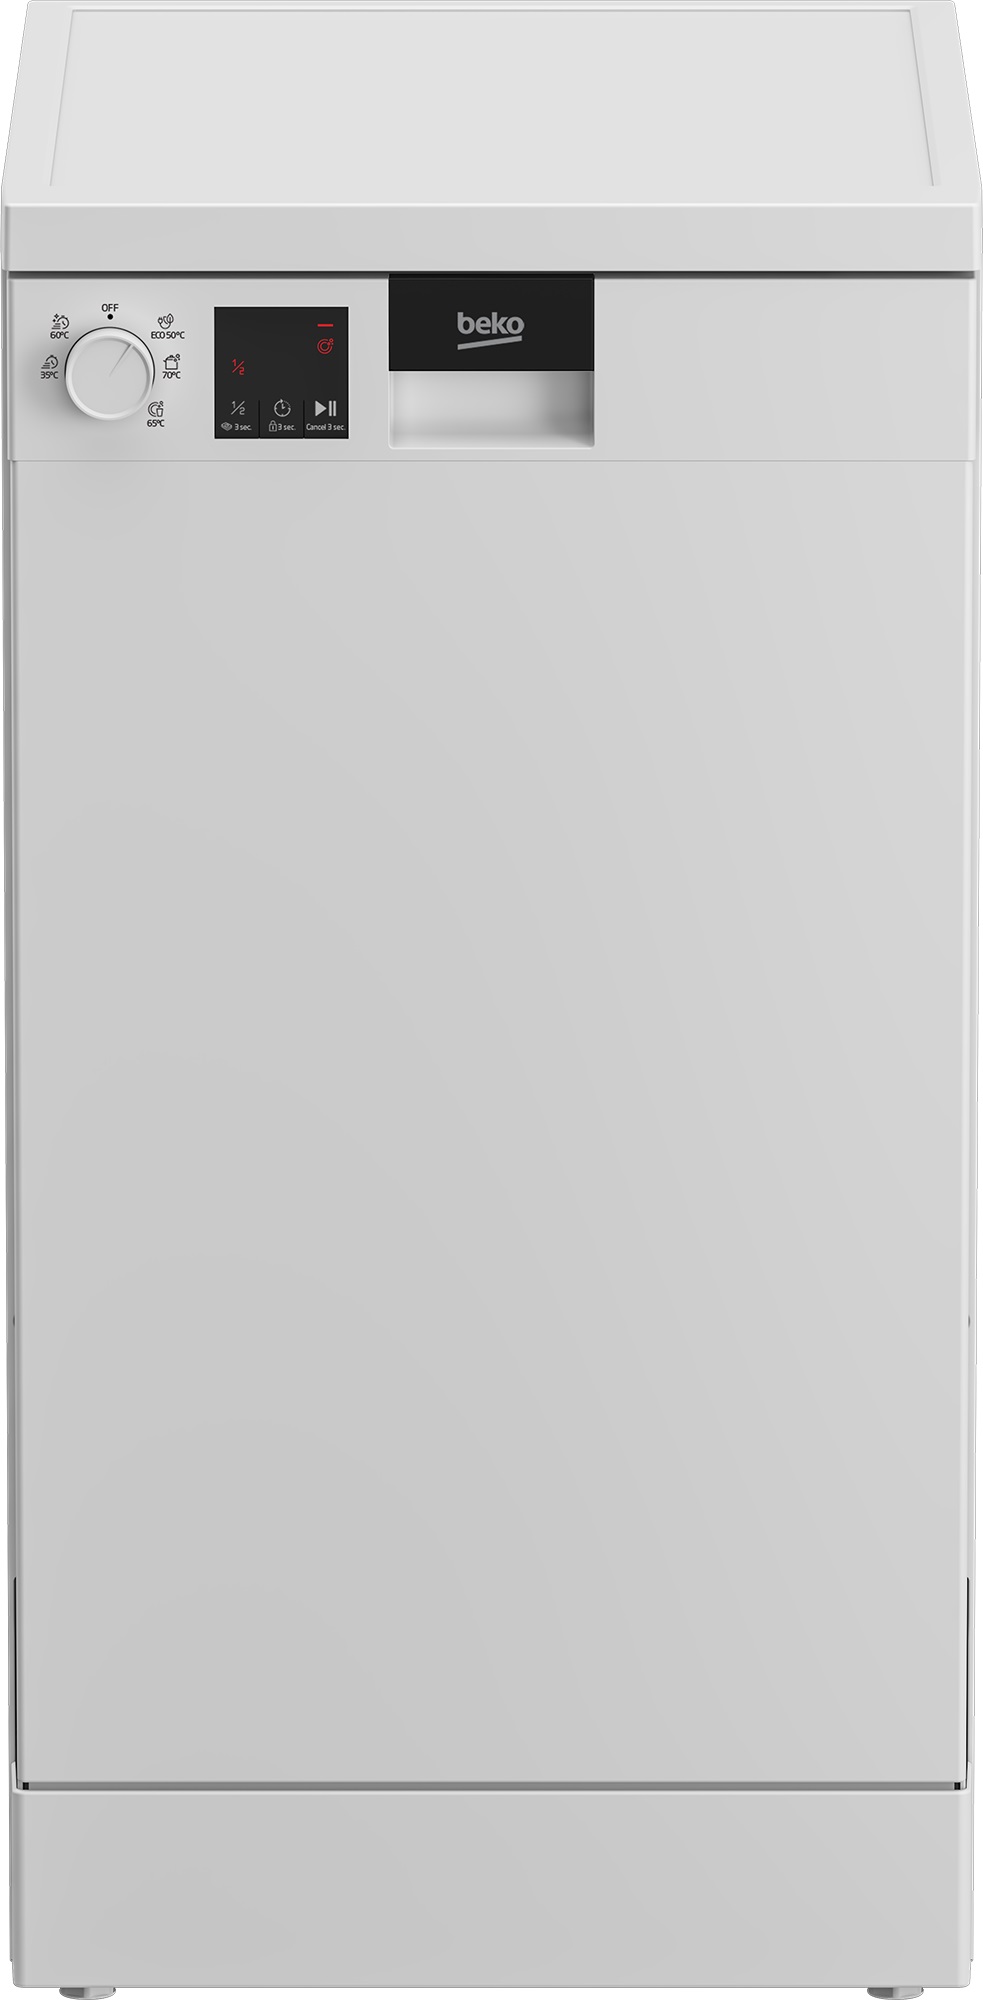 Посудомоечная машина Beko DVS050R01W белый 20 г ч портативный генератор озона 110 в машина воздушный фильтр вентилятор очиститель для домашнего автомобиля с таймером